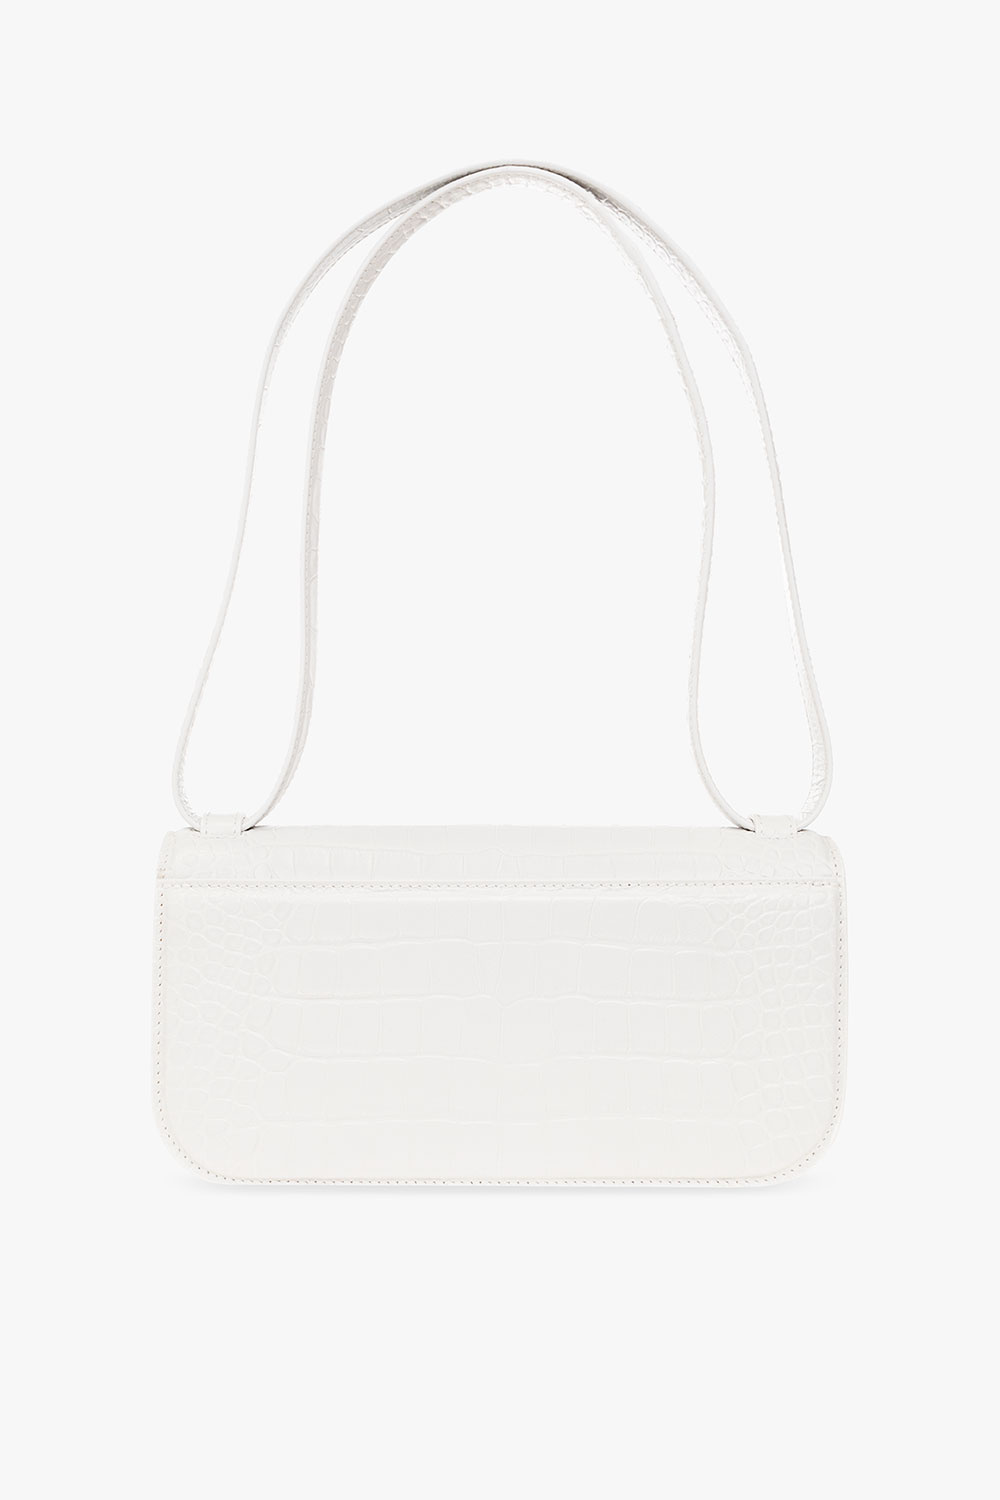 Balenciaga ‘Gossip S’ shoulder bag